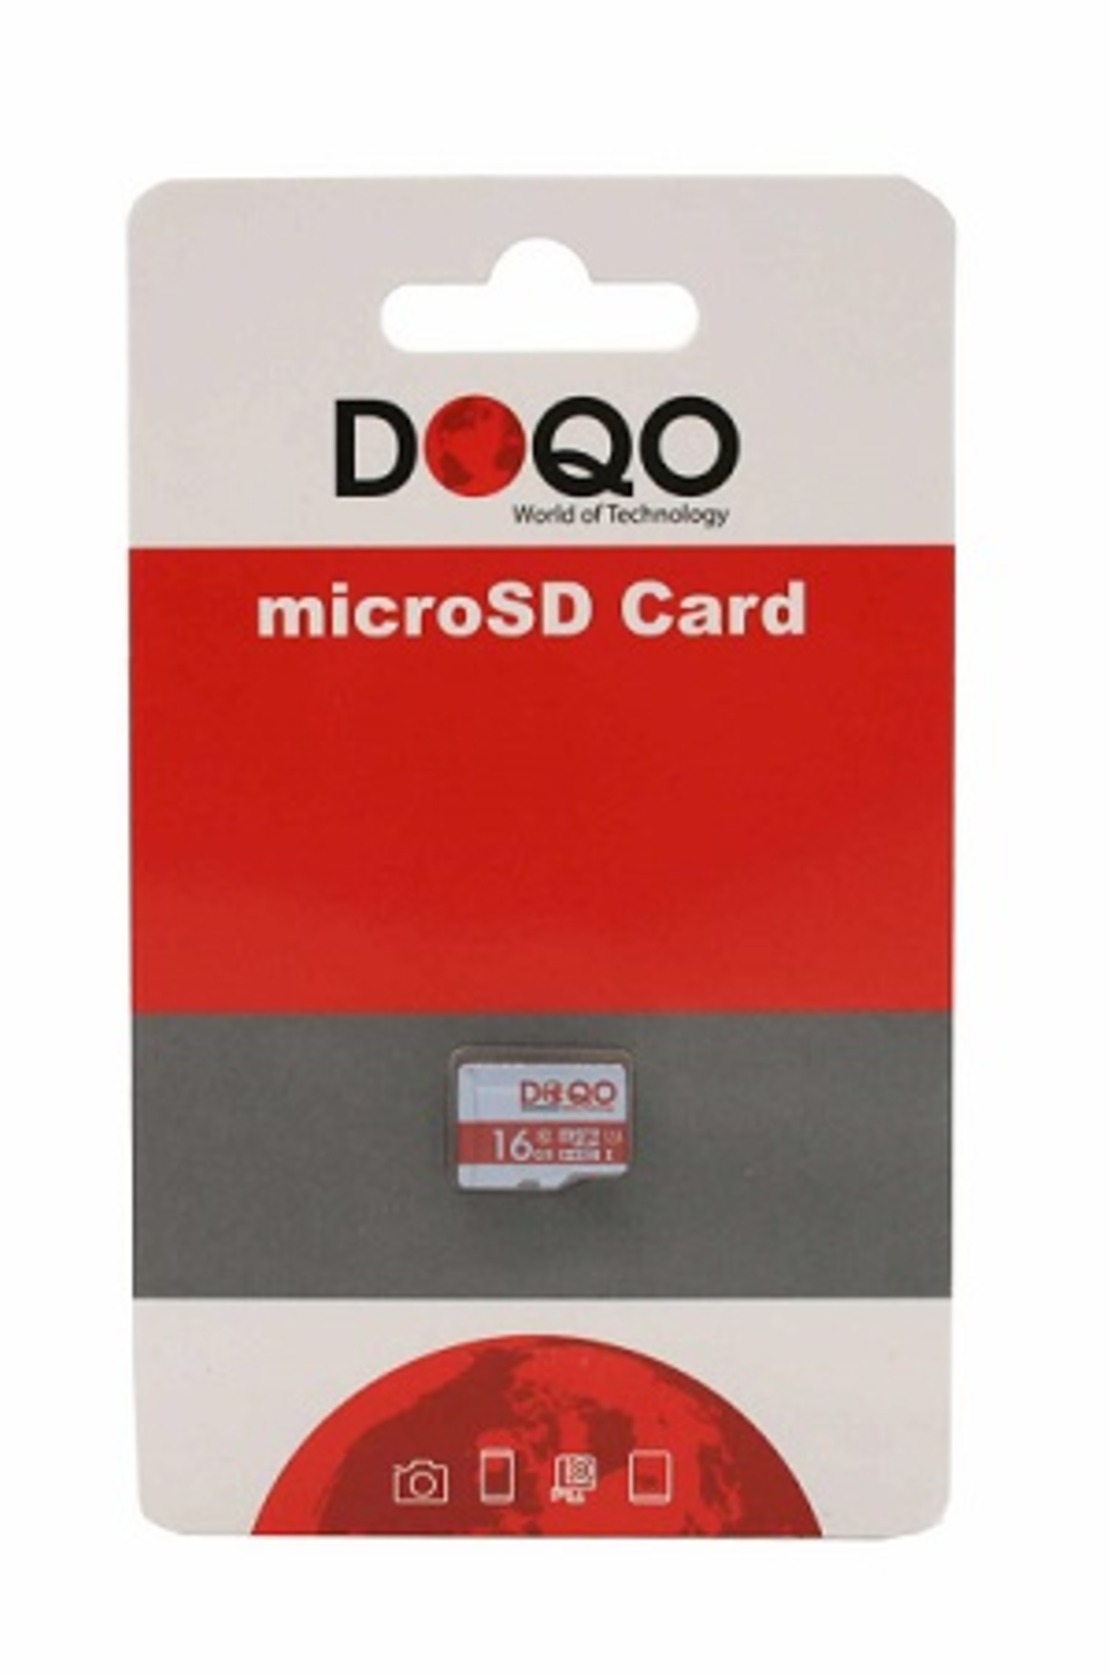 נגן MP3 סיקס מבית דוקו DOQO SIX 8 GB